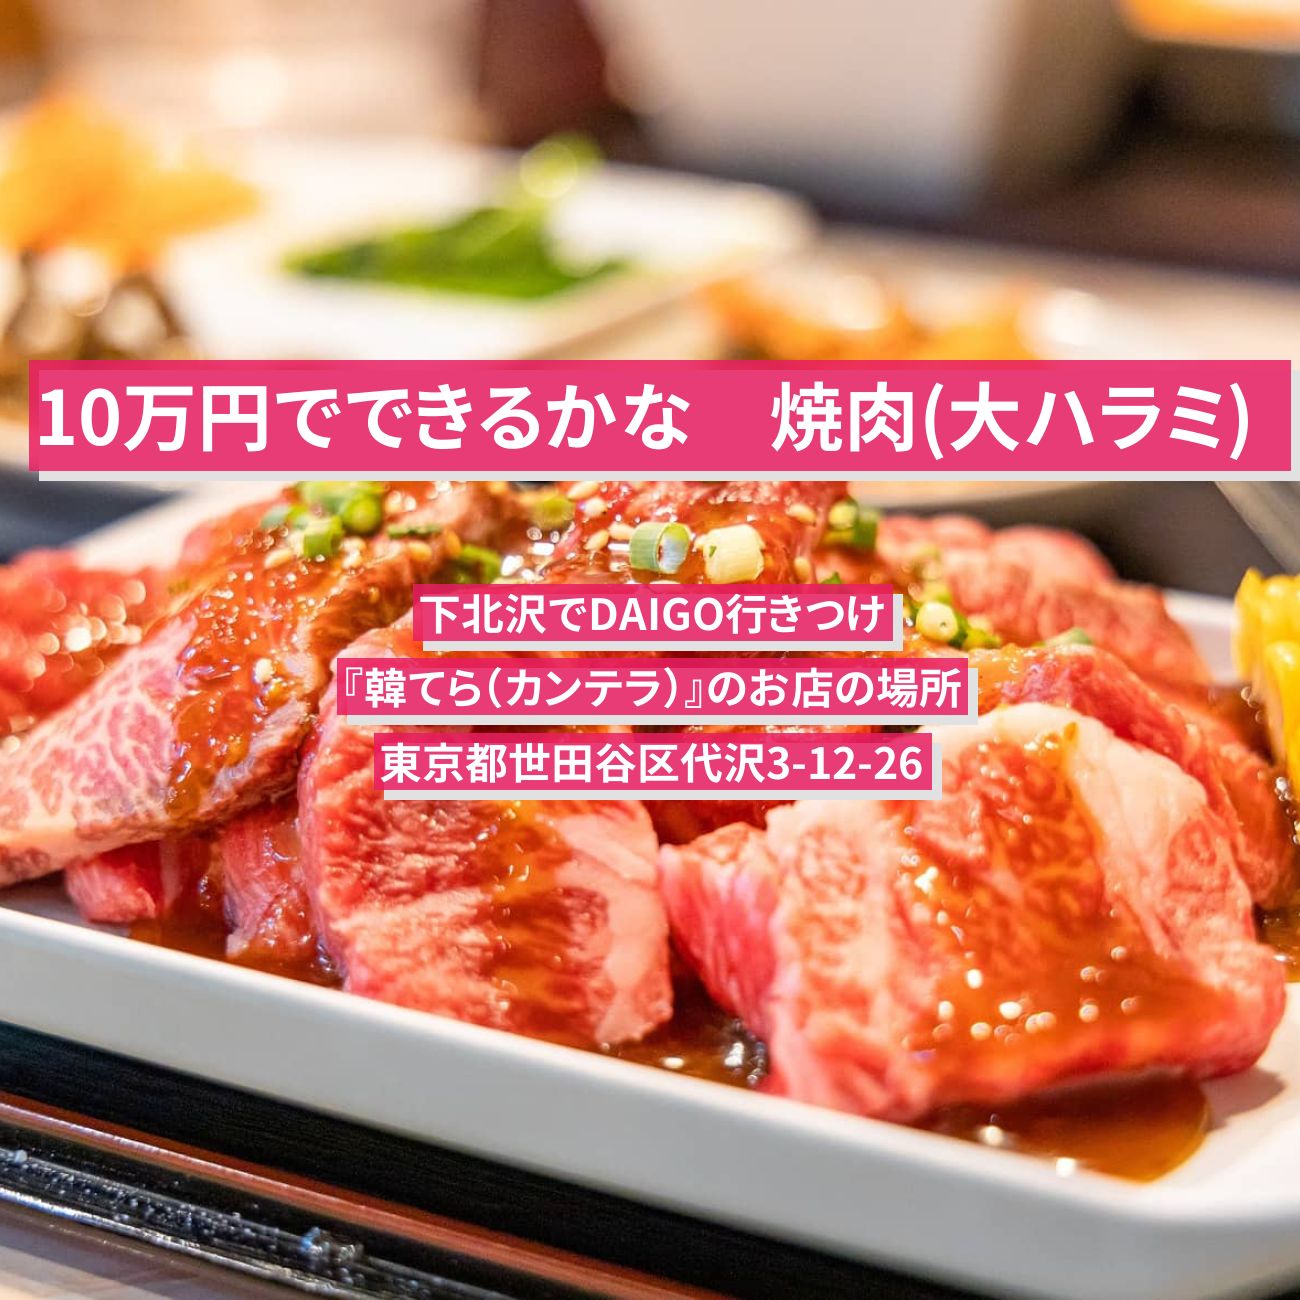 【10万円でできるかな】焼肉(ハラミステーキ) 下北沢でDAIGO行きつけ『韓てら（カンテラ）』のお店の場所